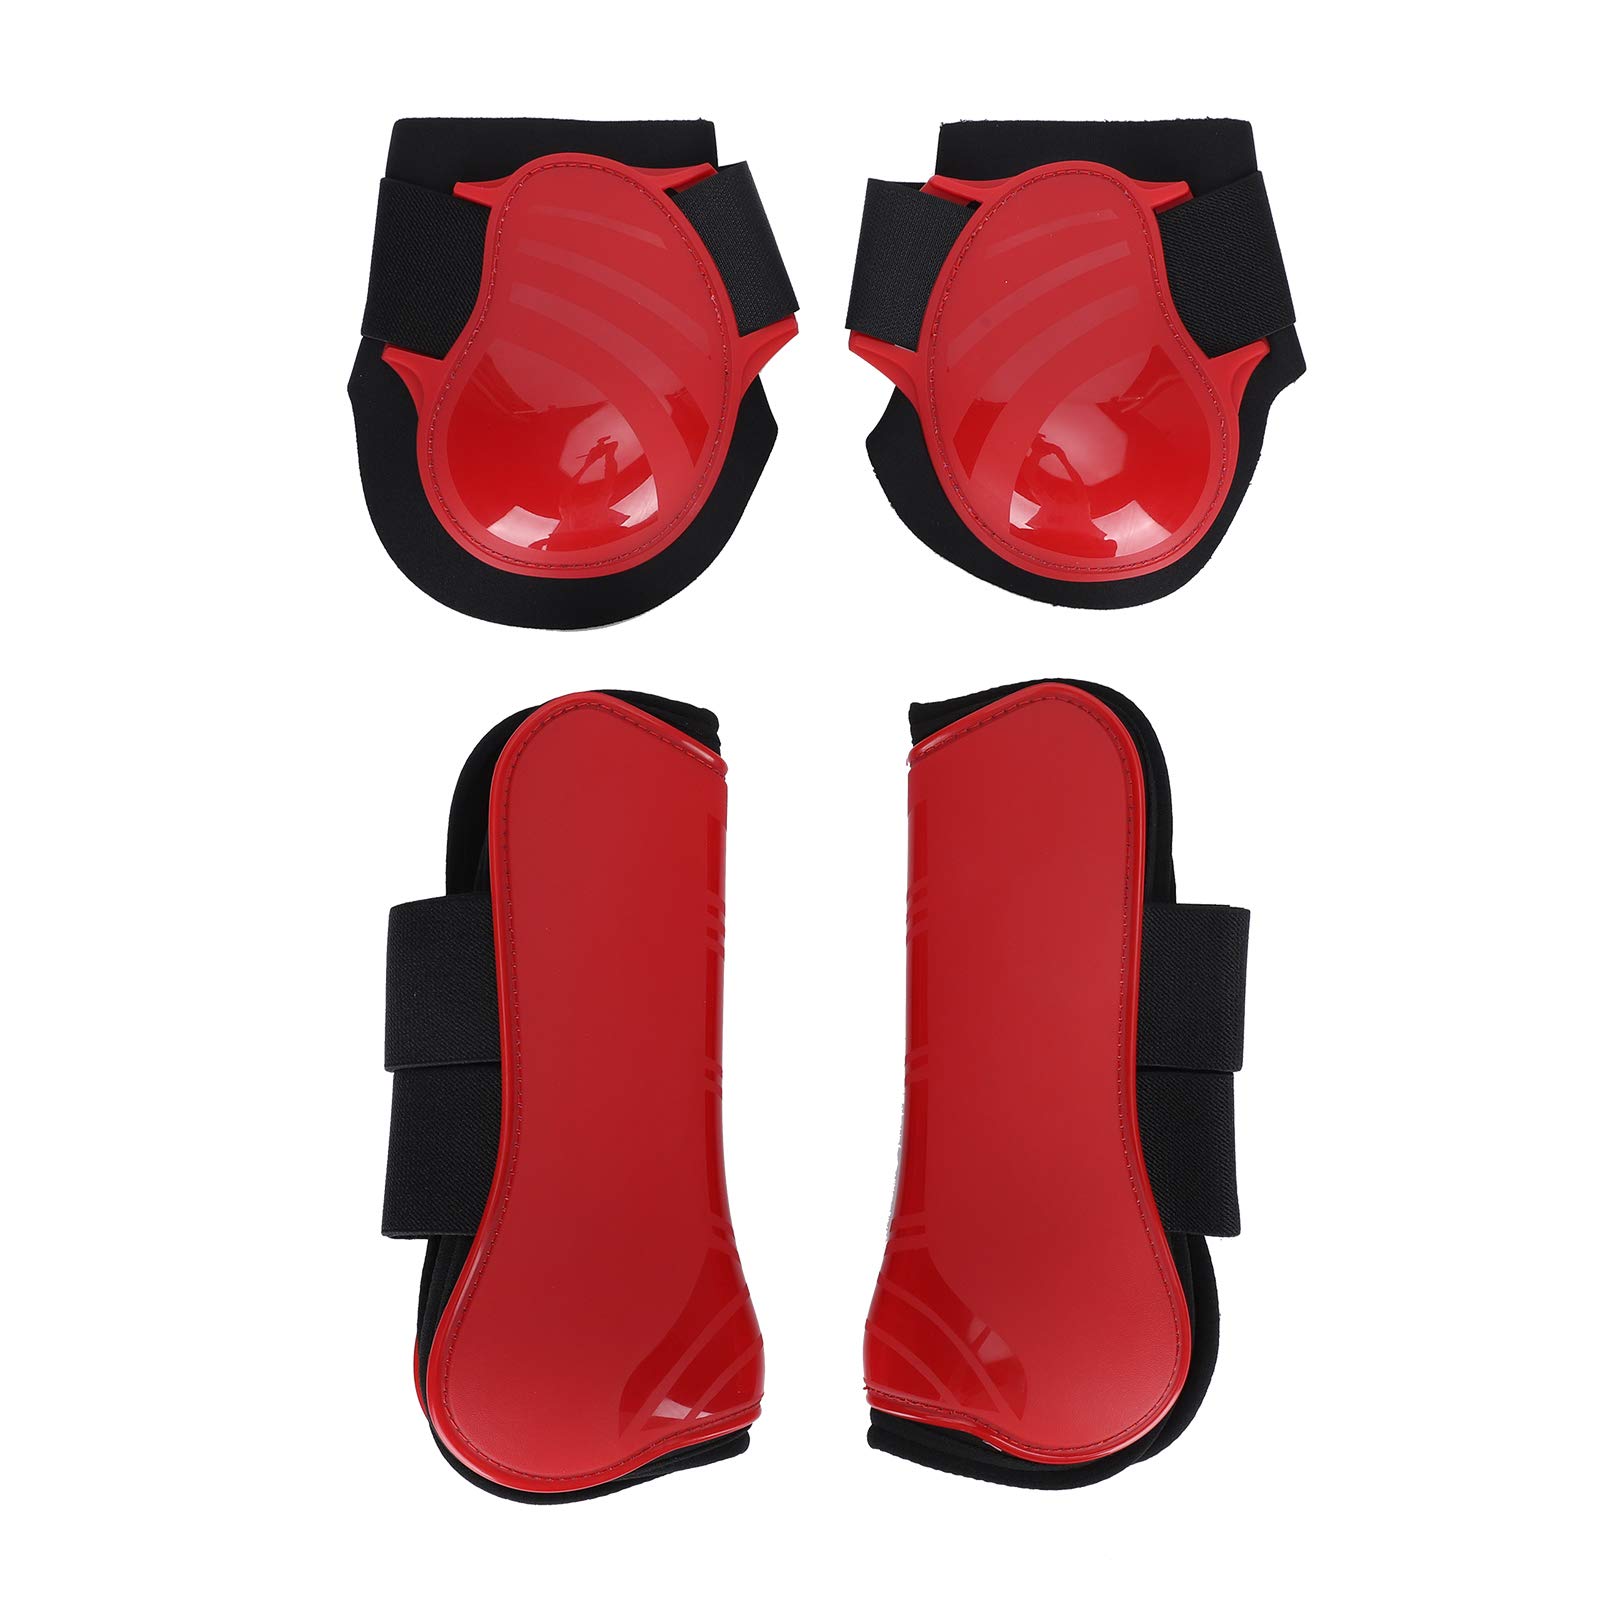 EVTSCAN 1 Paar Pferdestützstiefel, PU Sicherer Beinschutz Pferdesehnenstiefel Atmungsaktiver Wickel Weniger Schweiß und Reibung Reitausrüstung(L-rot)